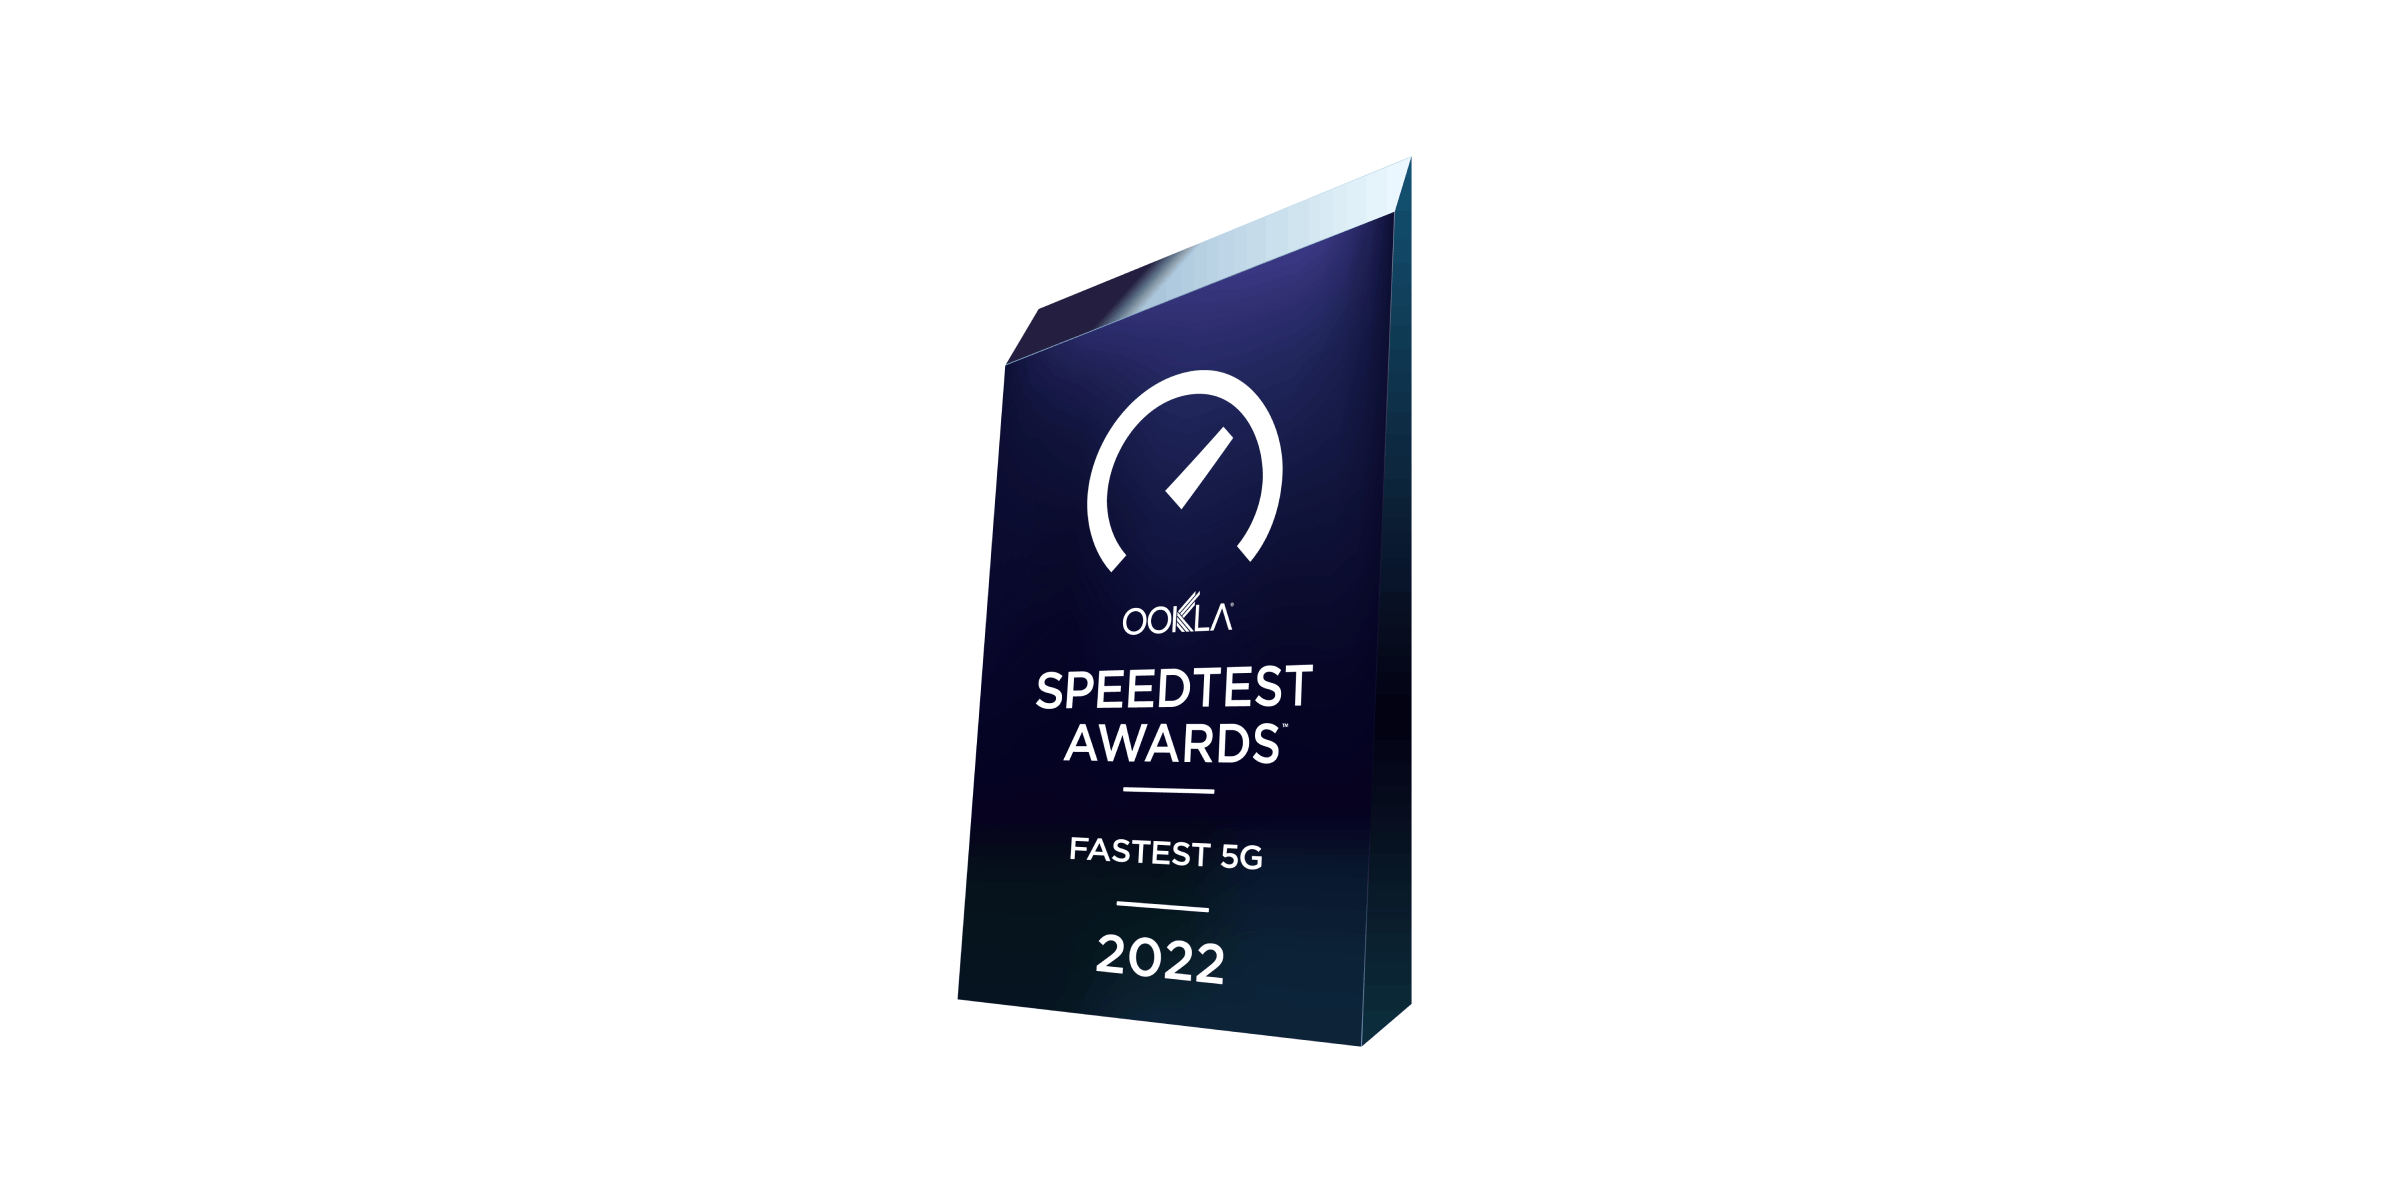 Speedtest awards fastest 5G